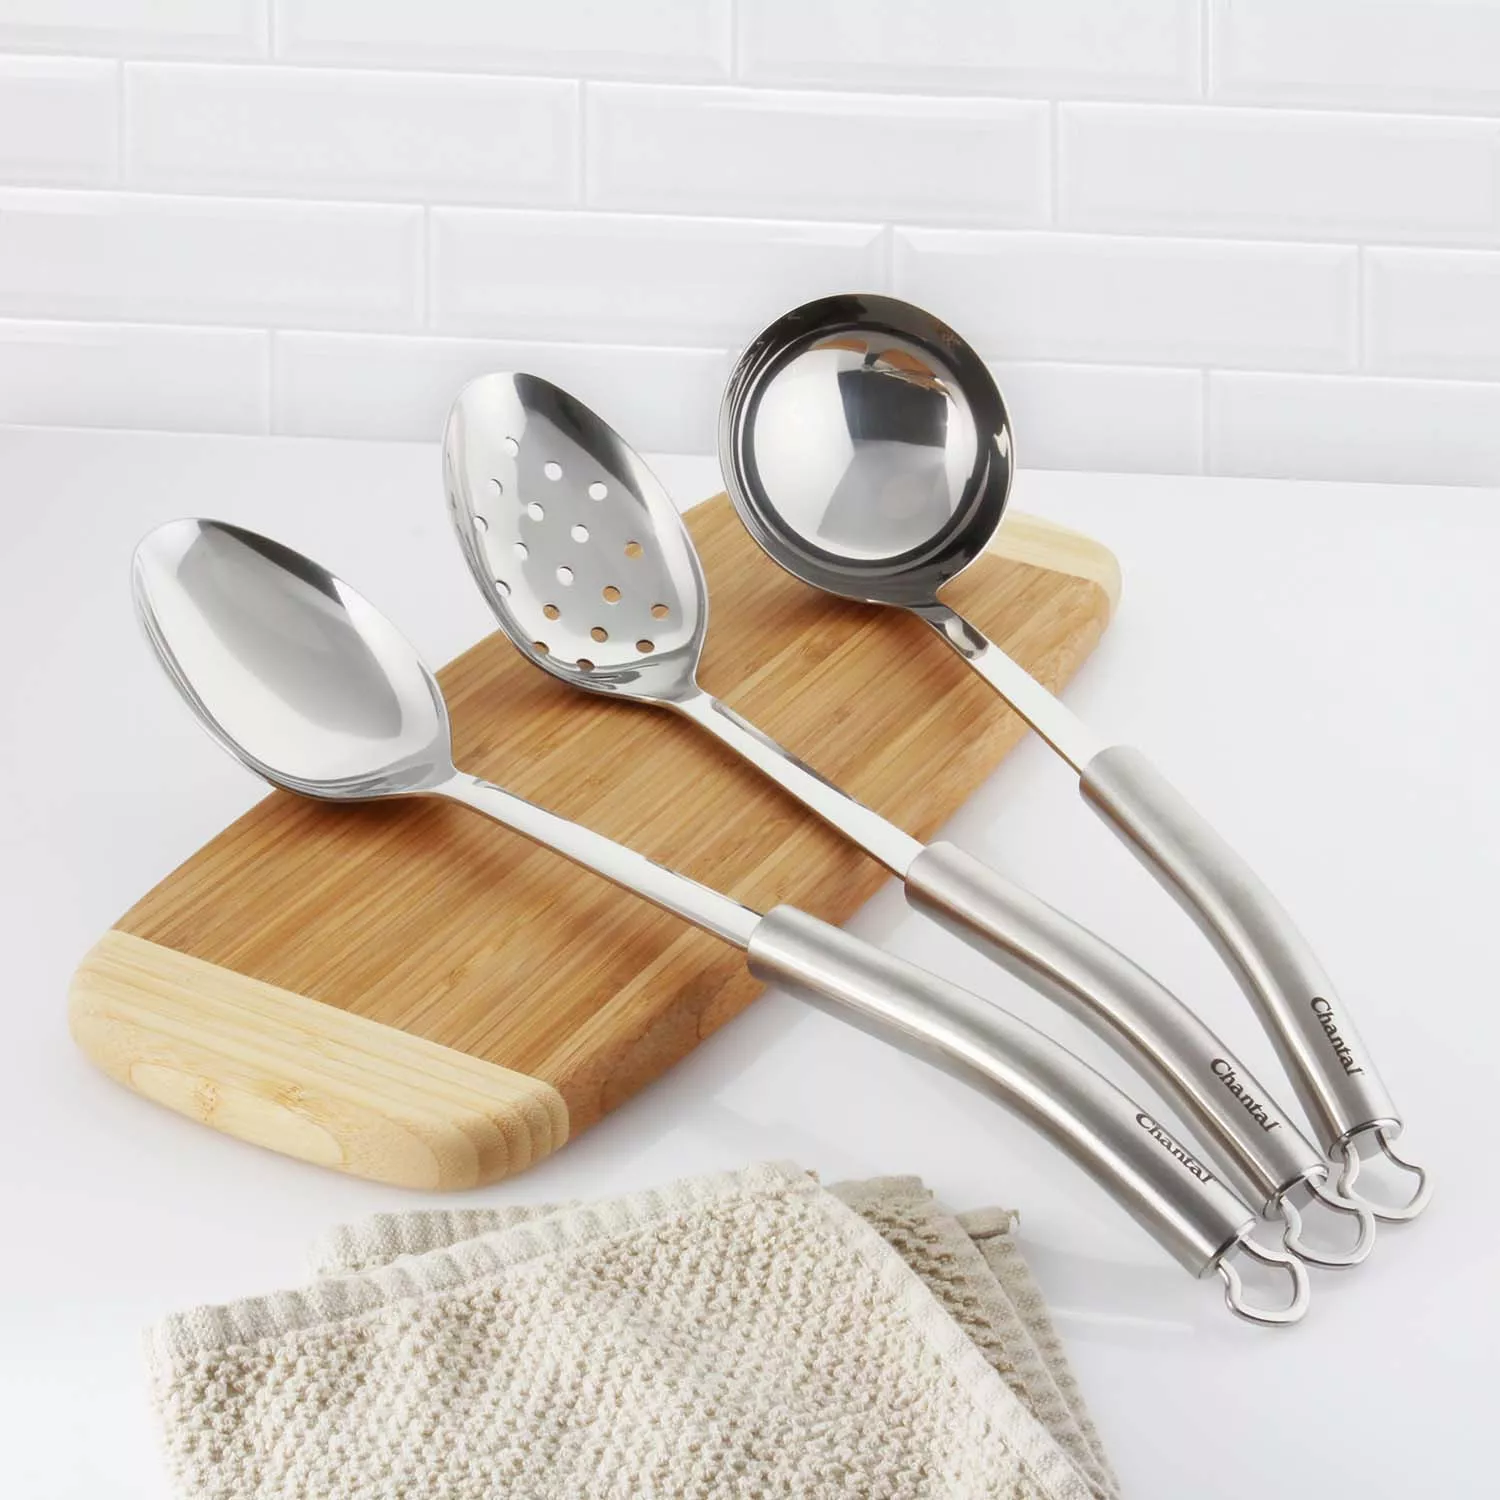 Wooden Ladle Spoon Set Long Handle Soup Ladle For Pot & Bowl Non-stick  Wooden Spoon Set For Cooking Serving Ladles